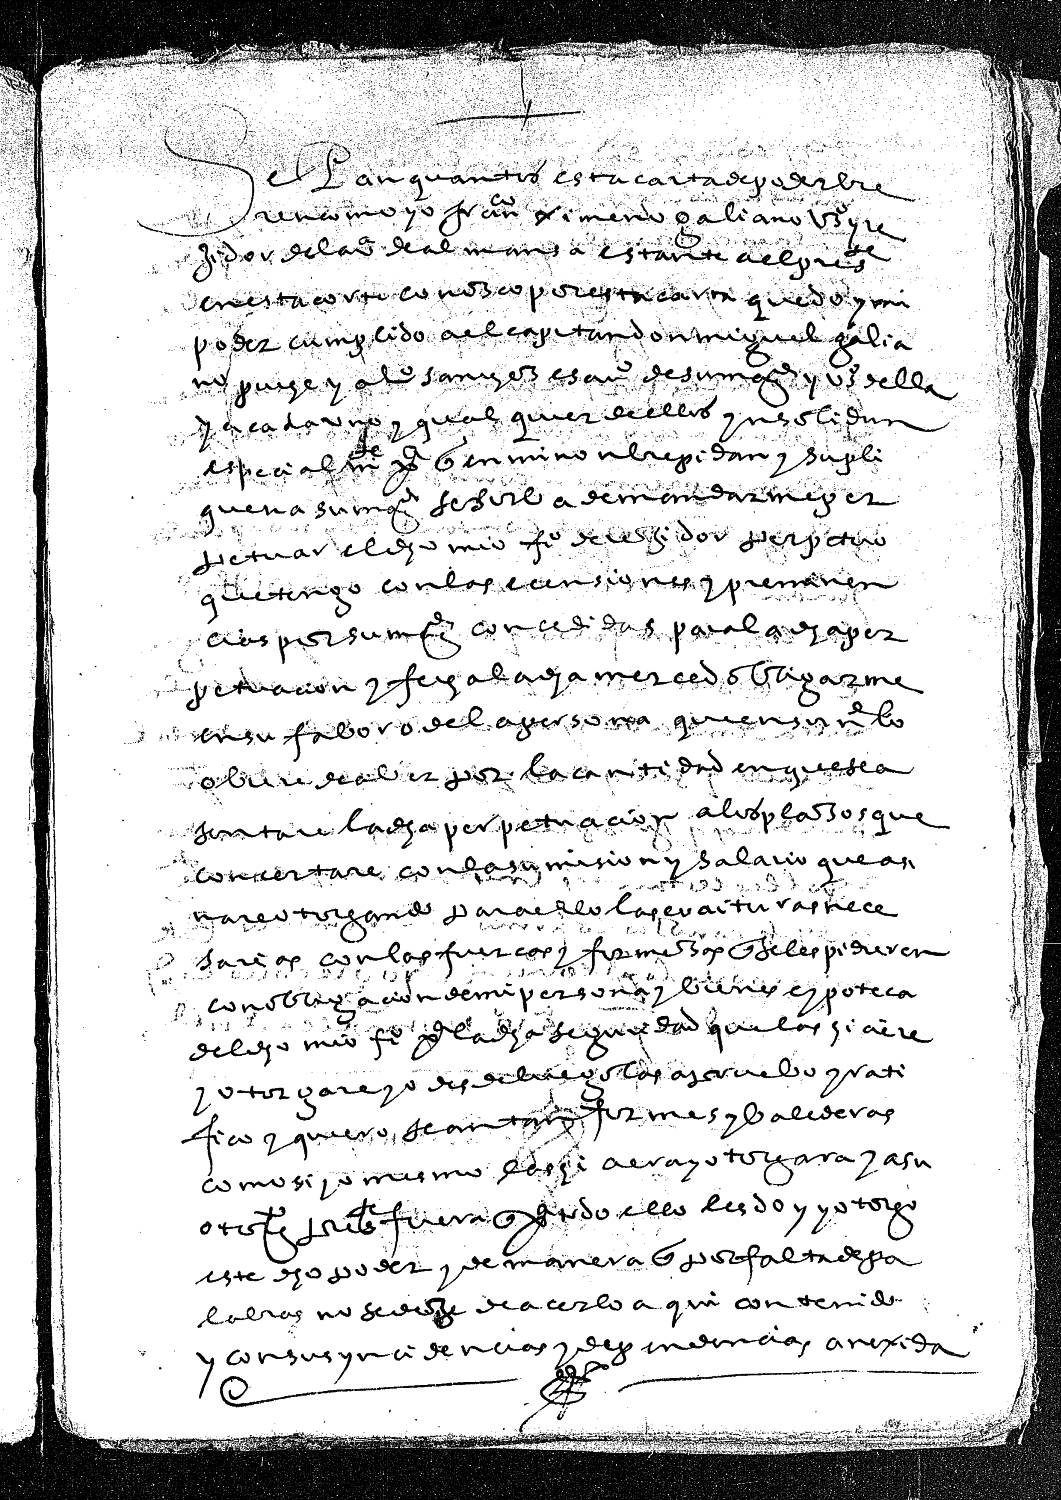 Carta de poder de Francisco Gimeno Galiano dada a Miguel Galiano Puche y Alonso Sánchez, escribanos reales y vecinos de Almansa, para que consigan en la Corte la perpetuación del oficio de regidor que tiene.